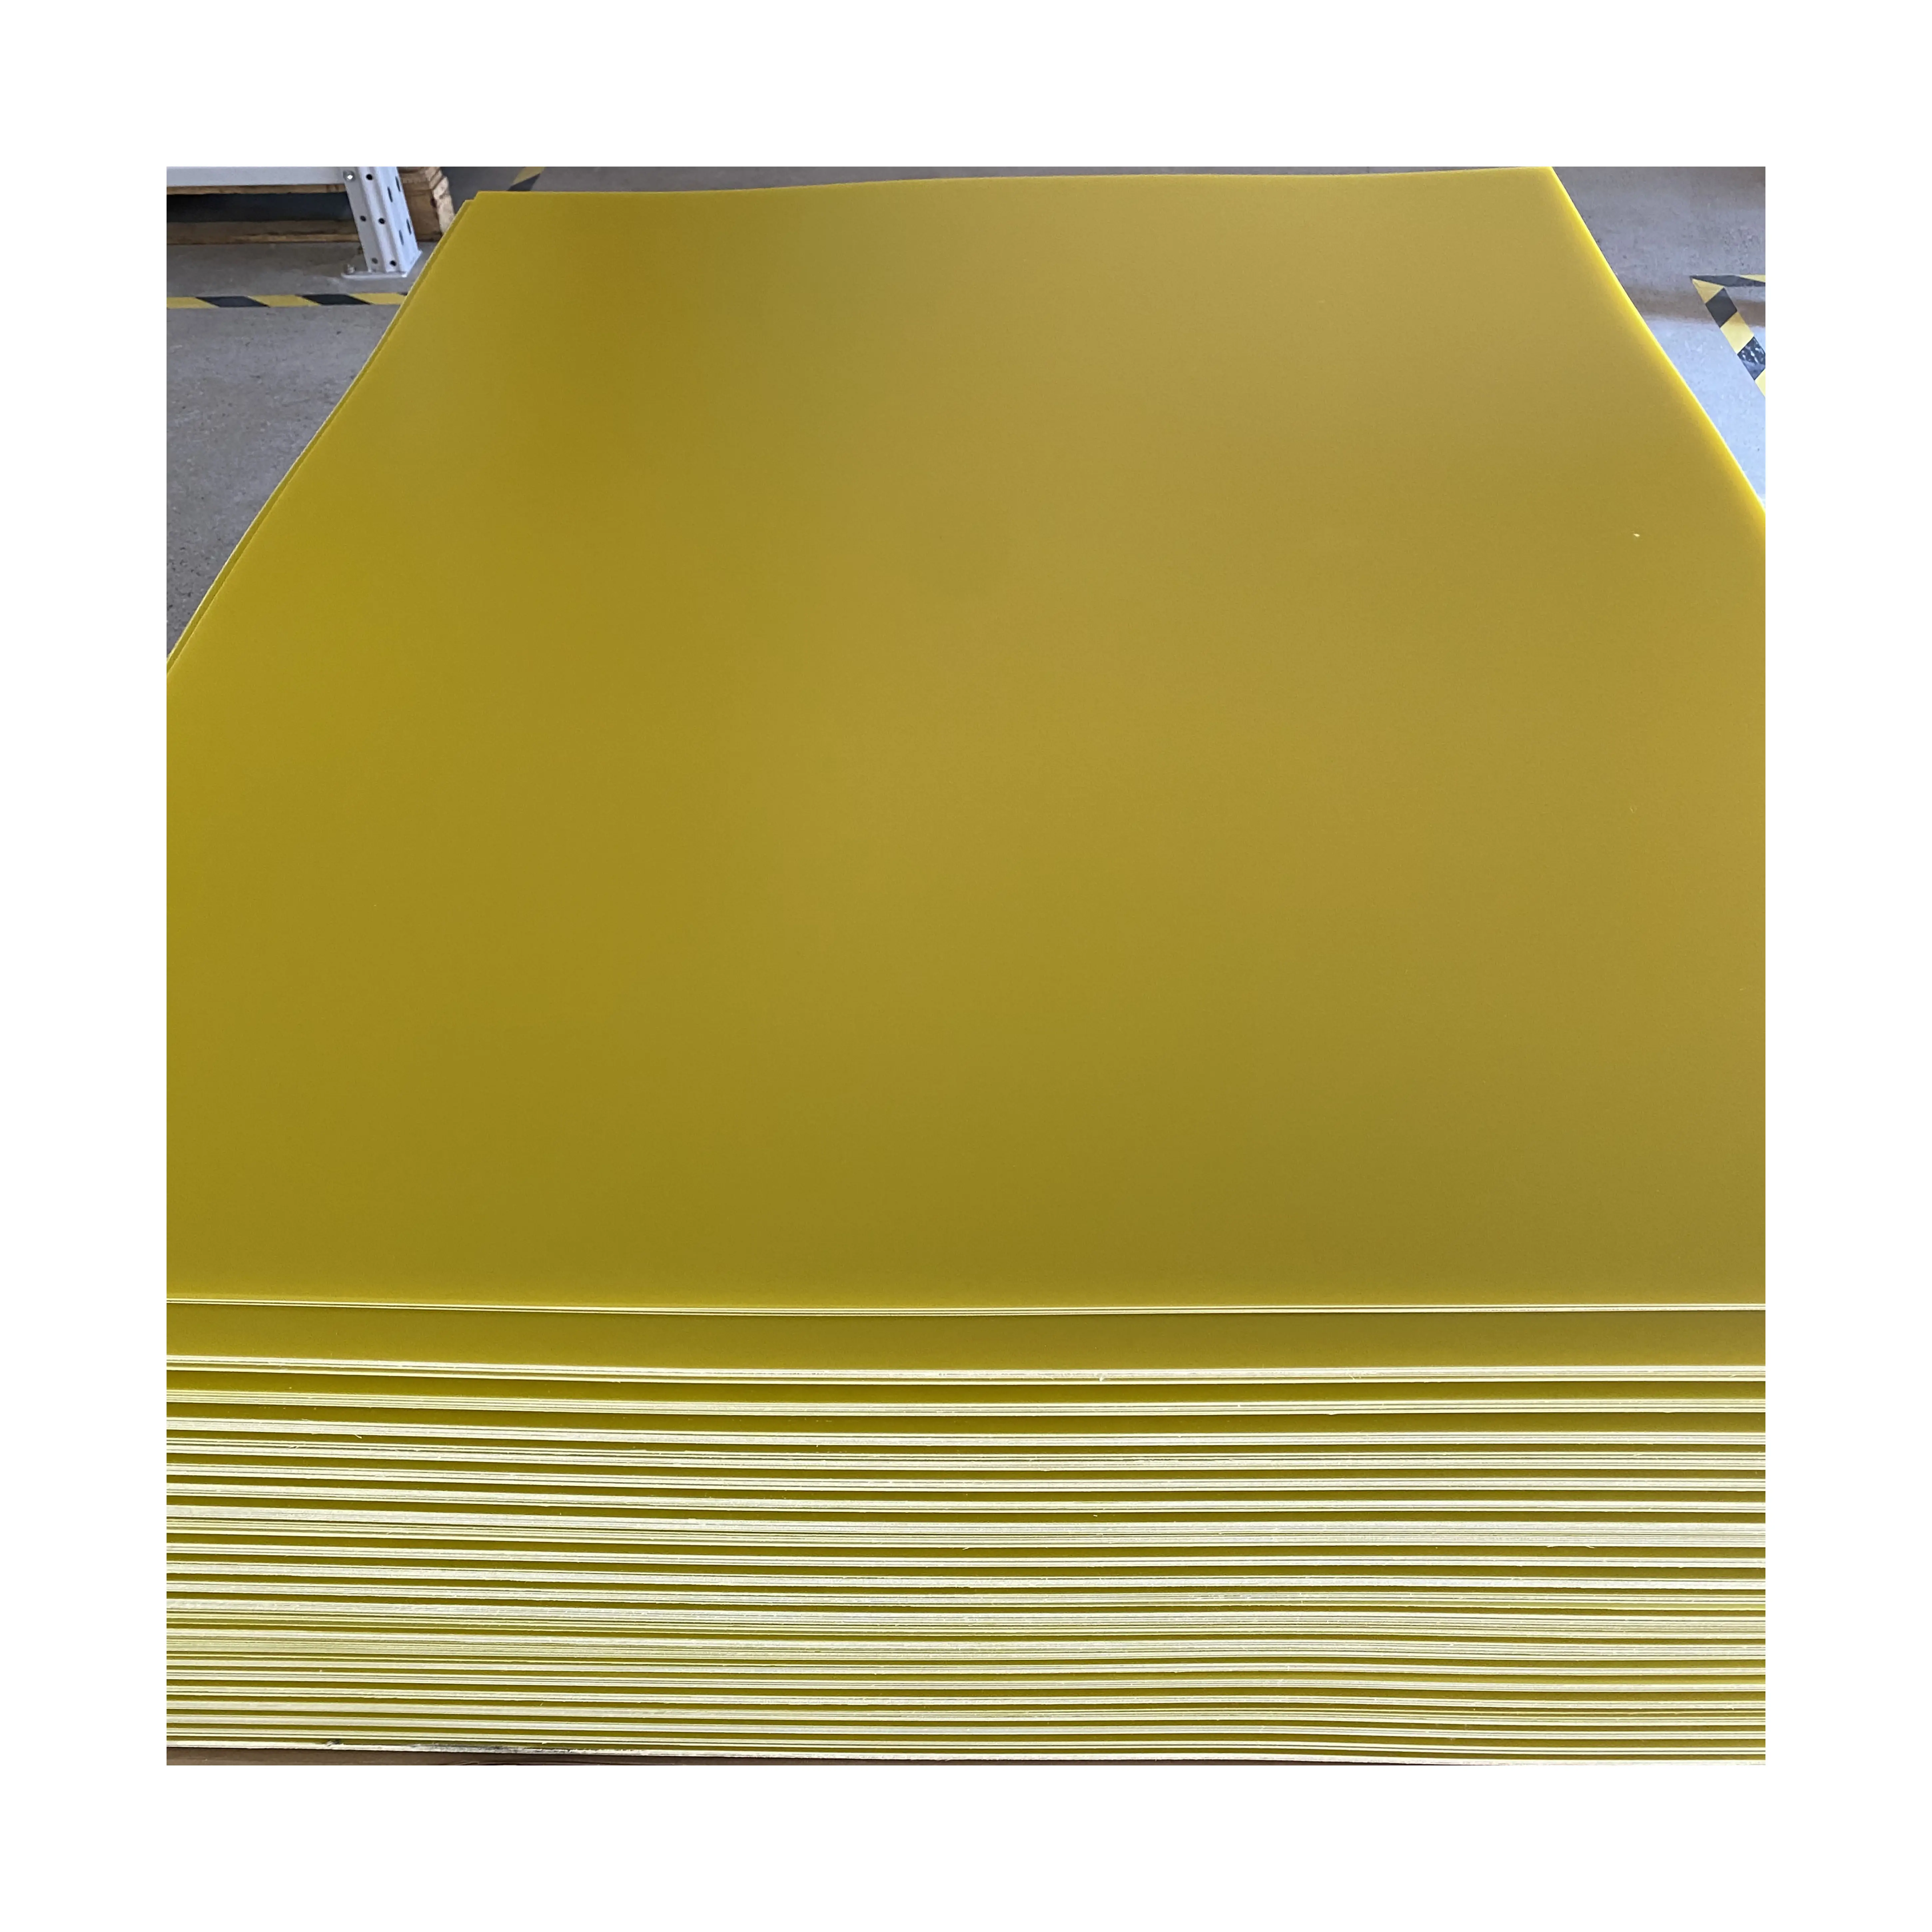 Das Werk ist spezial isiert auf die Herstellung von FR4-Gelb-Epoxidharzplatten 5,0mm und Glasfaser platten 5,0mm